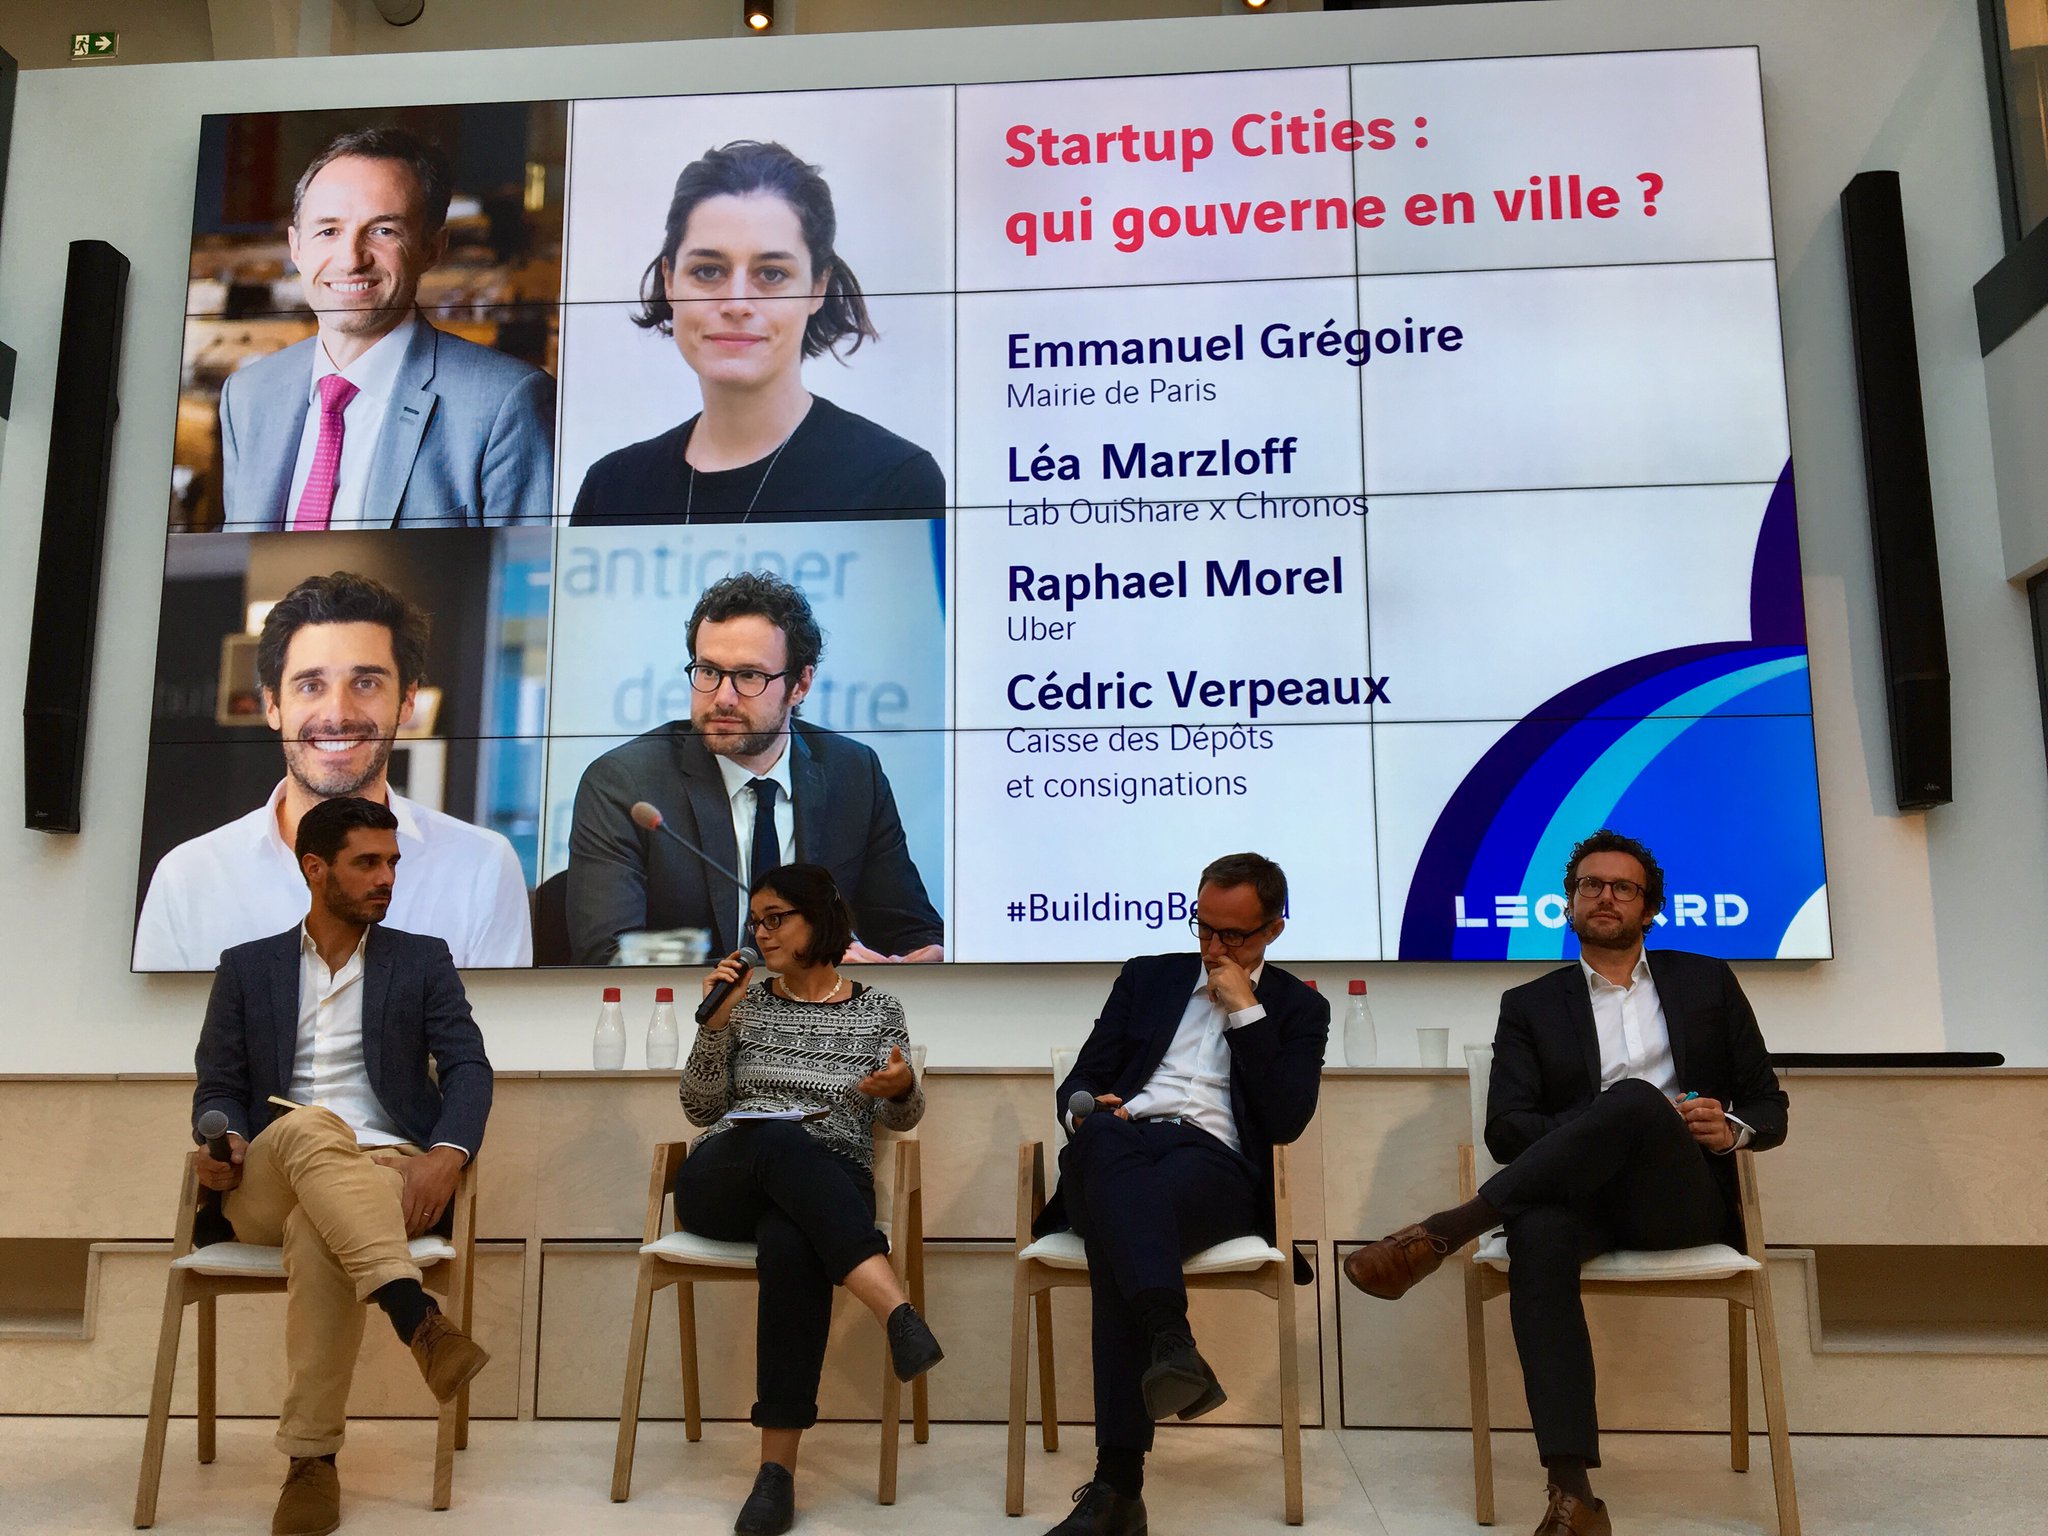 Start-up cities : qui gouverne en ville ? avec Emmanuel Grégoire, Léa Marzloff, Raphael Morel et Cédric Verpeaux